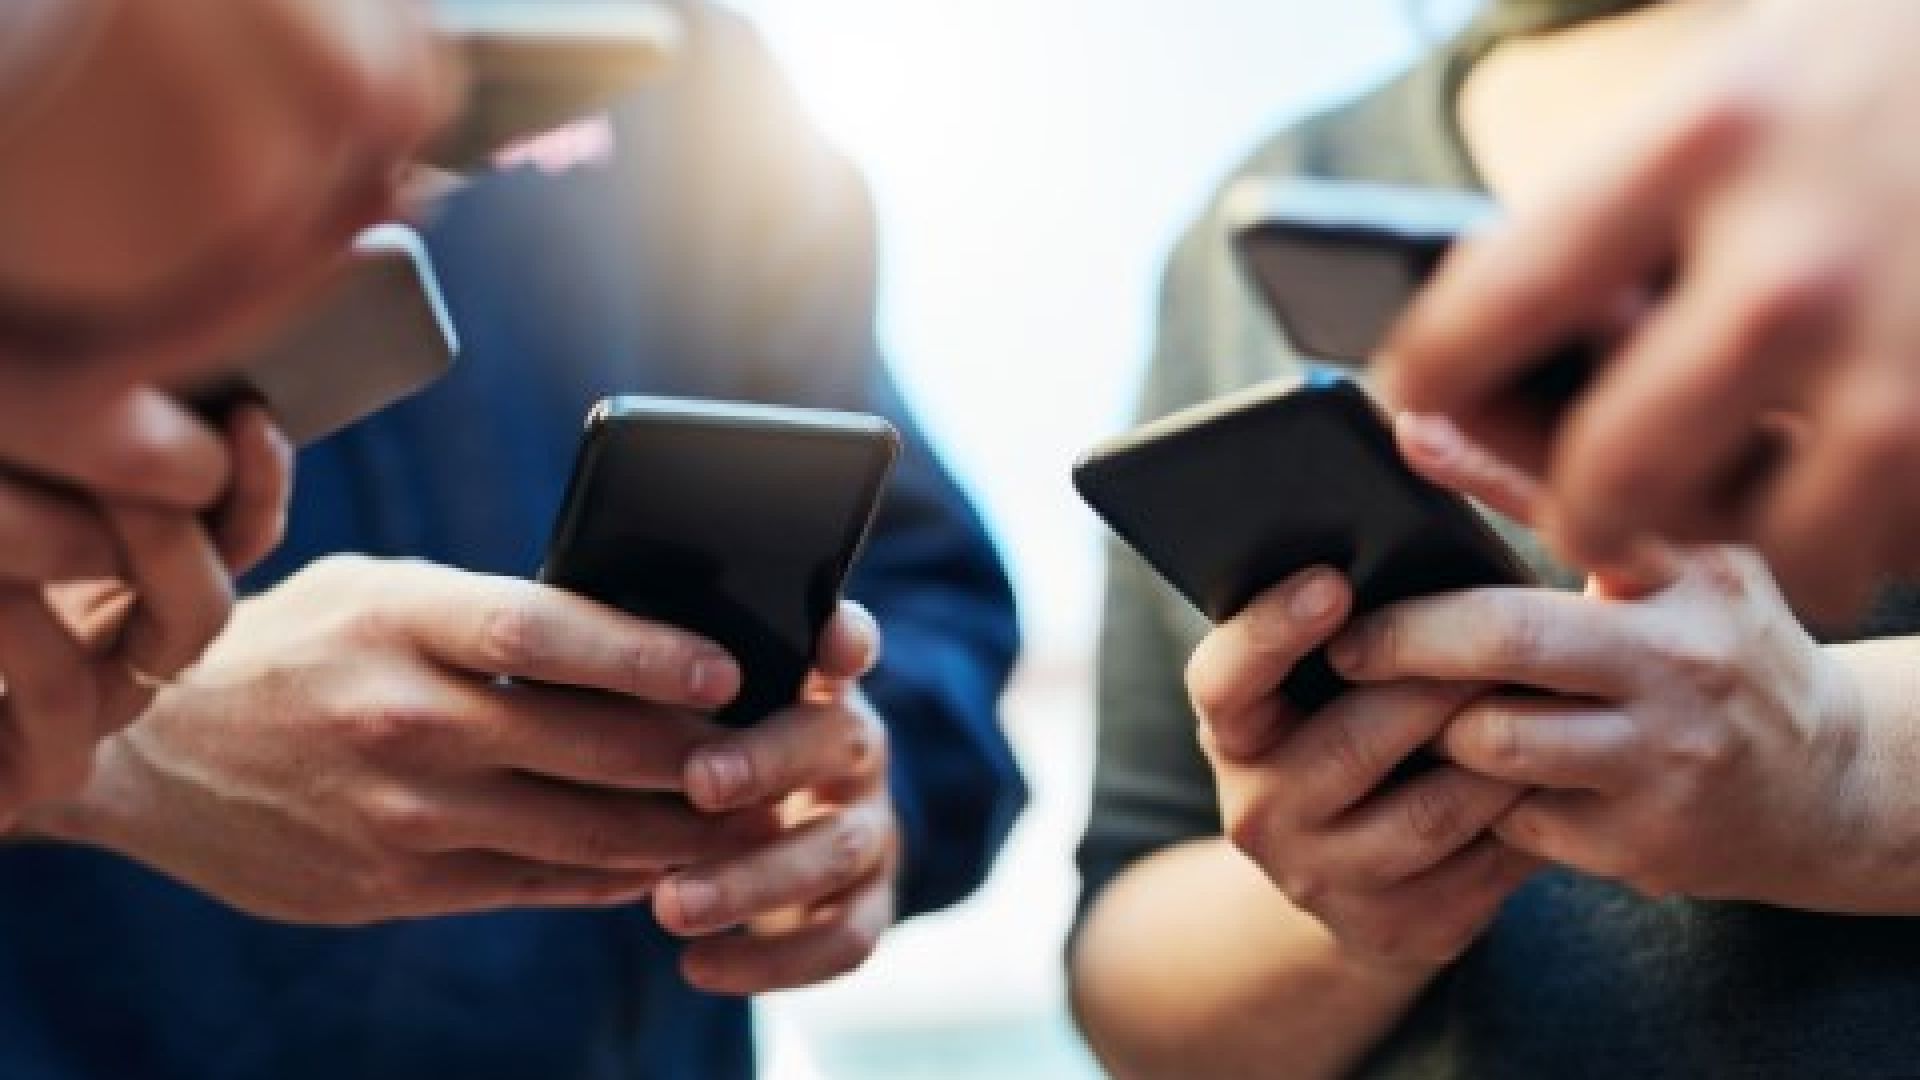 Ако са в джоба или на ръката, смартфони и смартчасовници влияят на пейсмейкърите